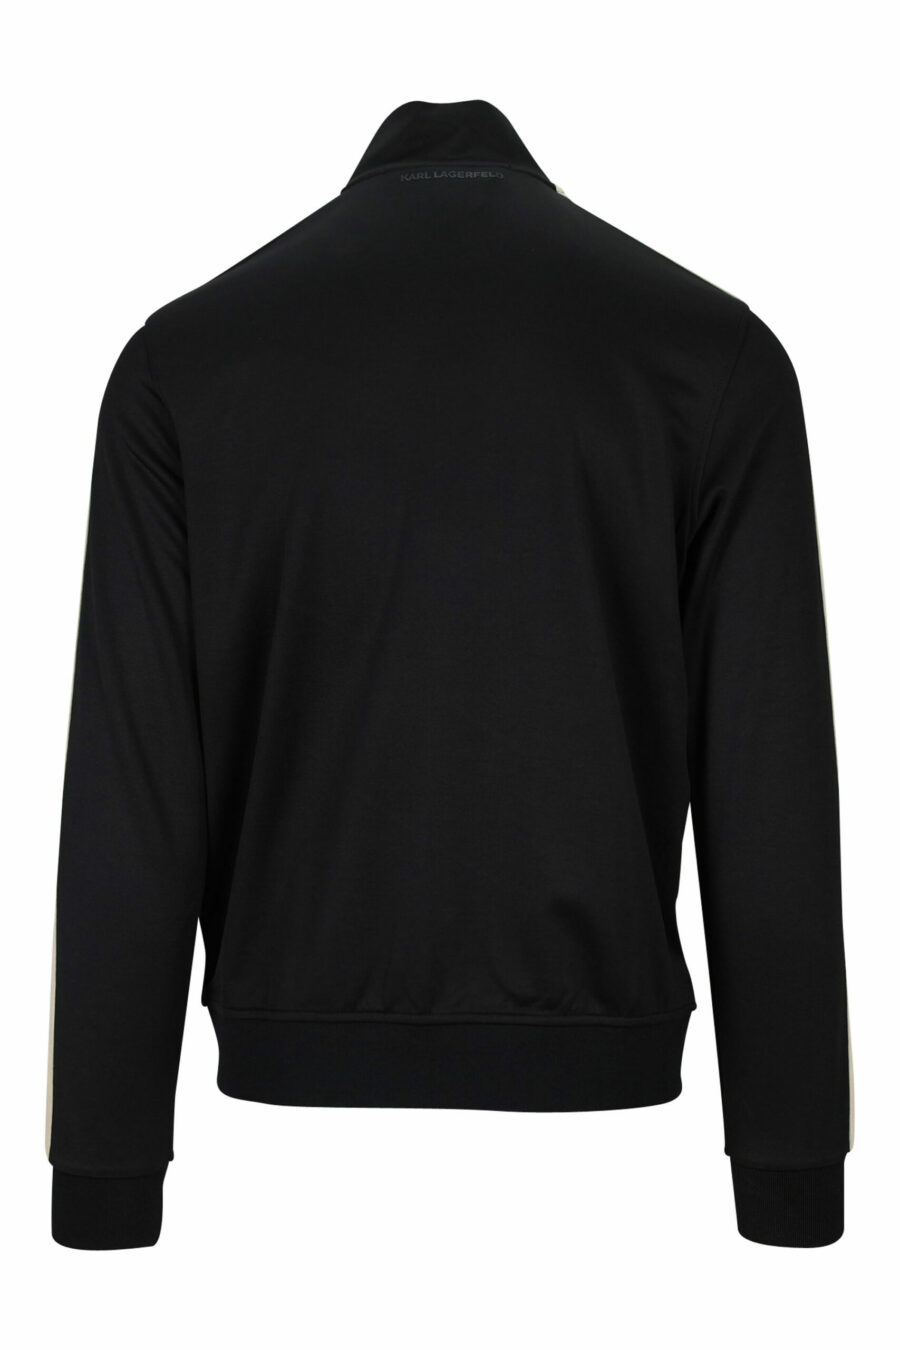 Schwarzes Reißverschluss-Sweatshirt mit Minilogue und beigen Seitenstreifen - 4062226394857 2 skaliert